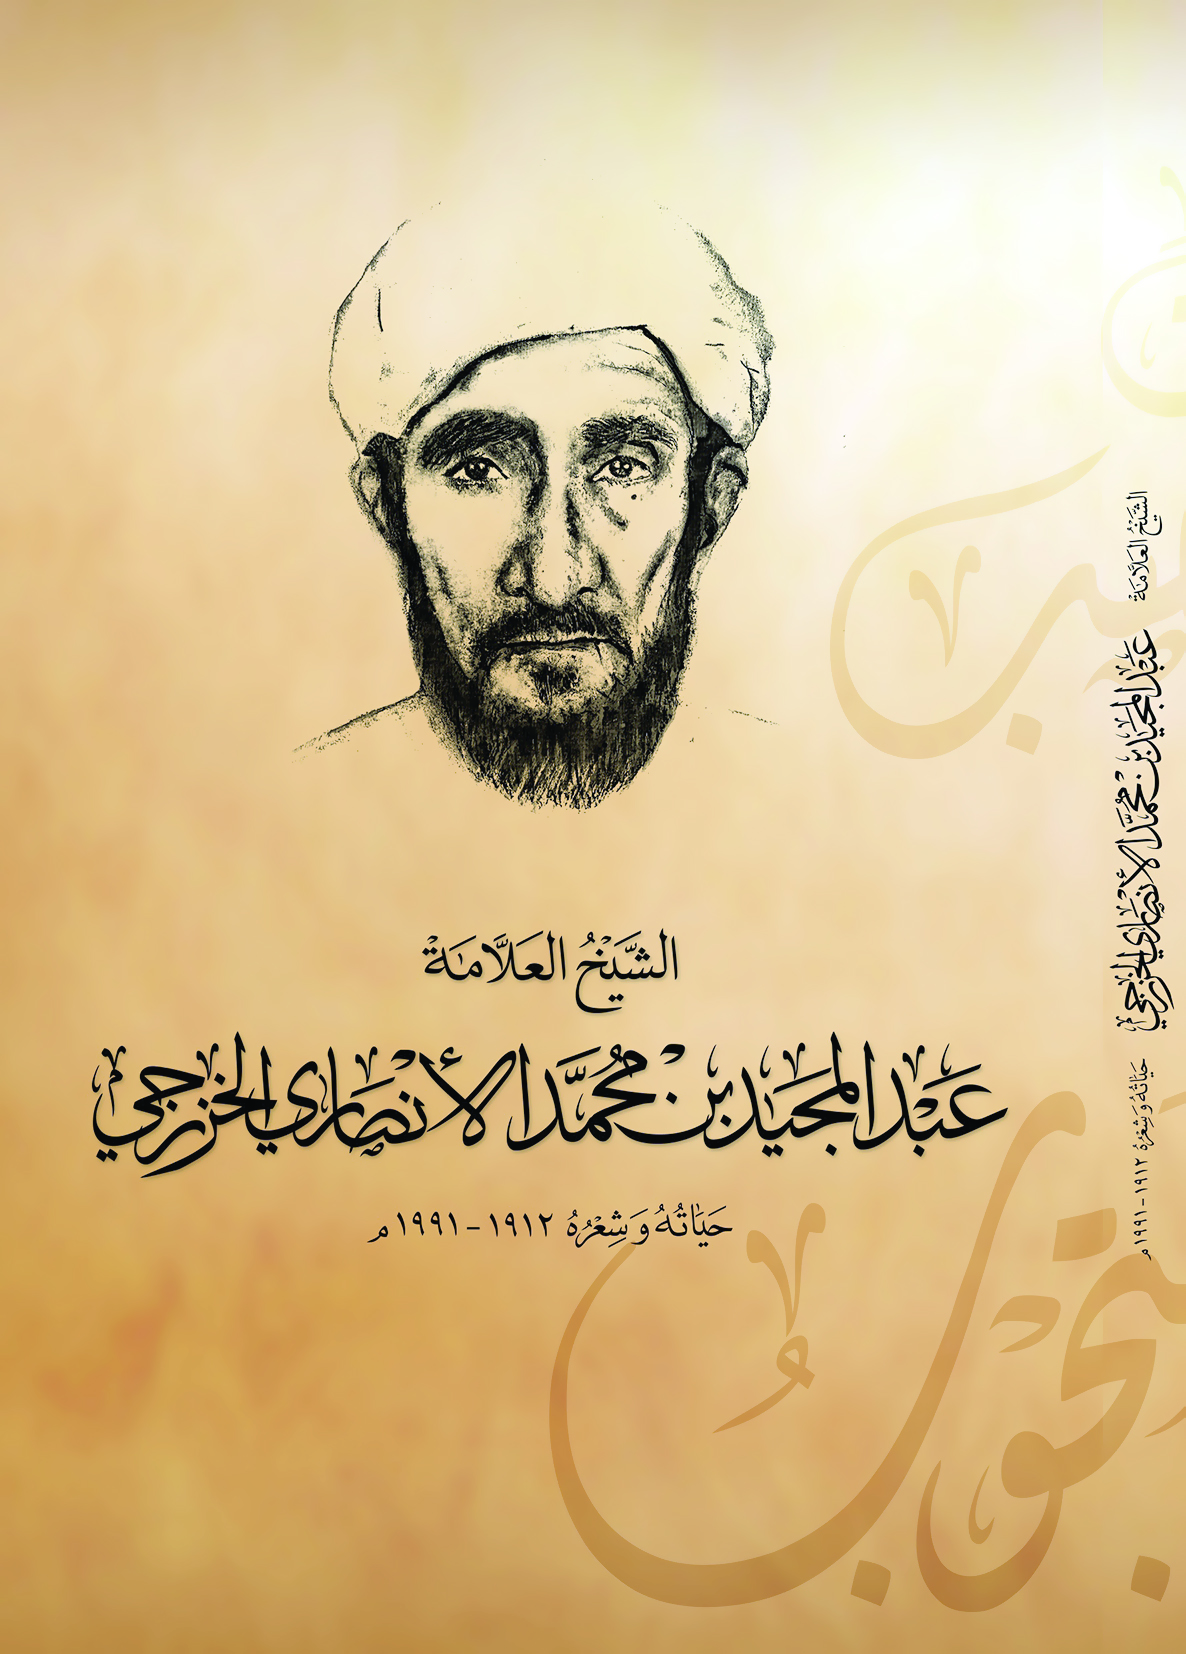 كتاب يرصد حياة العلاّمة عبد المجيد بن محمد الأنصاري الخزرجي